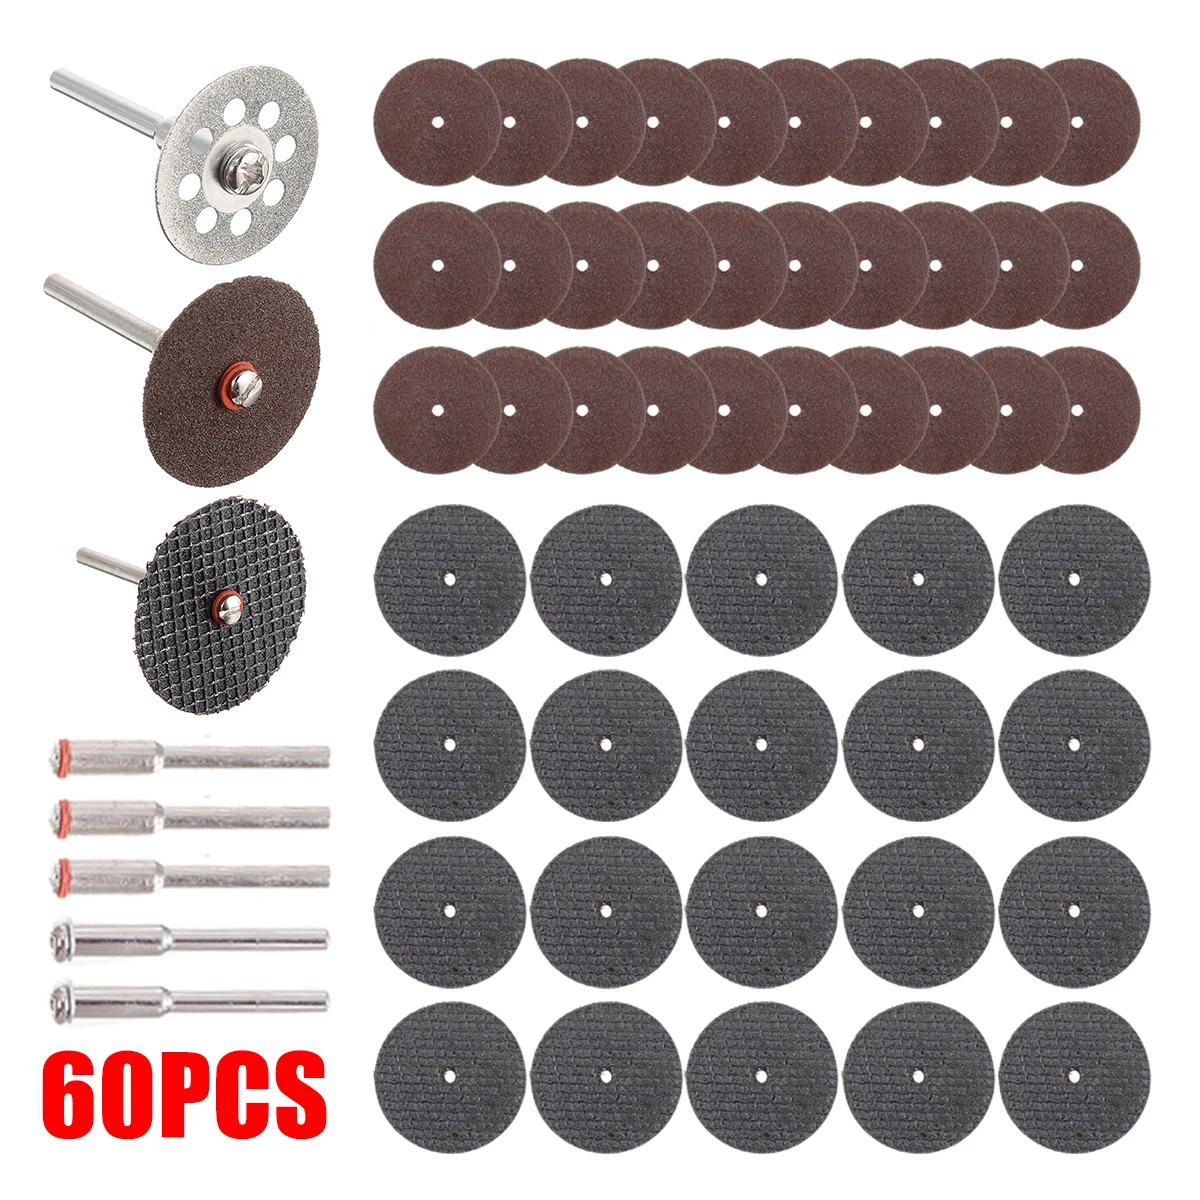 60pcs Mini Diamond Cutting Discs Wheel Tool Set Drill Bit For Rotary Saw Tool